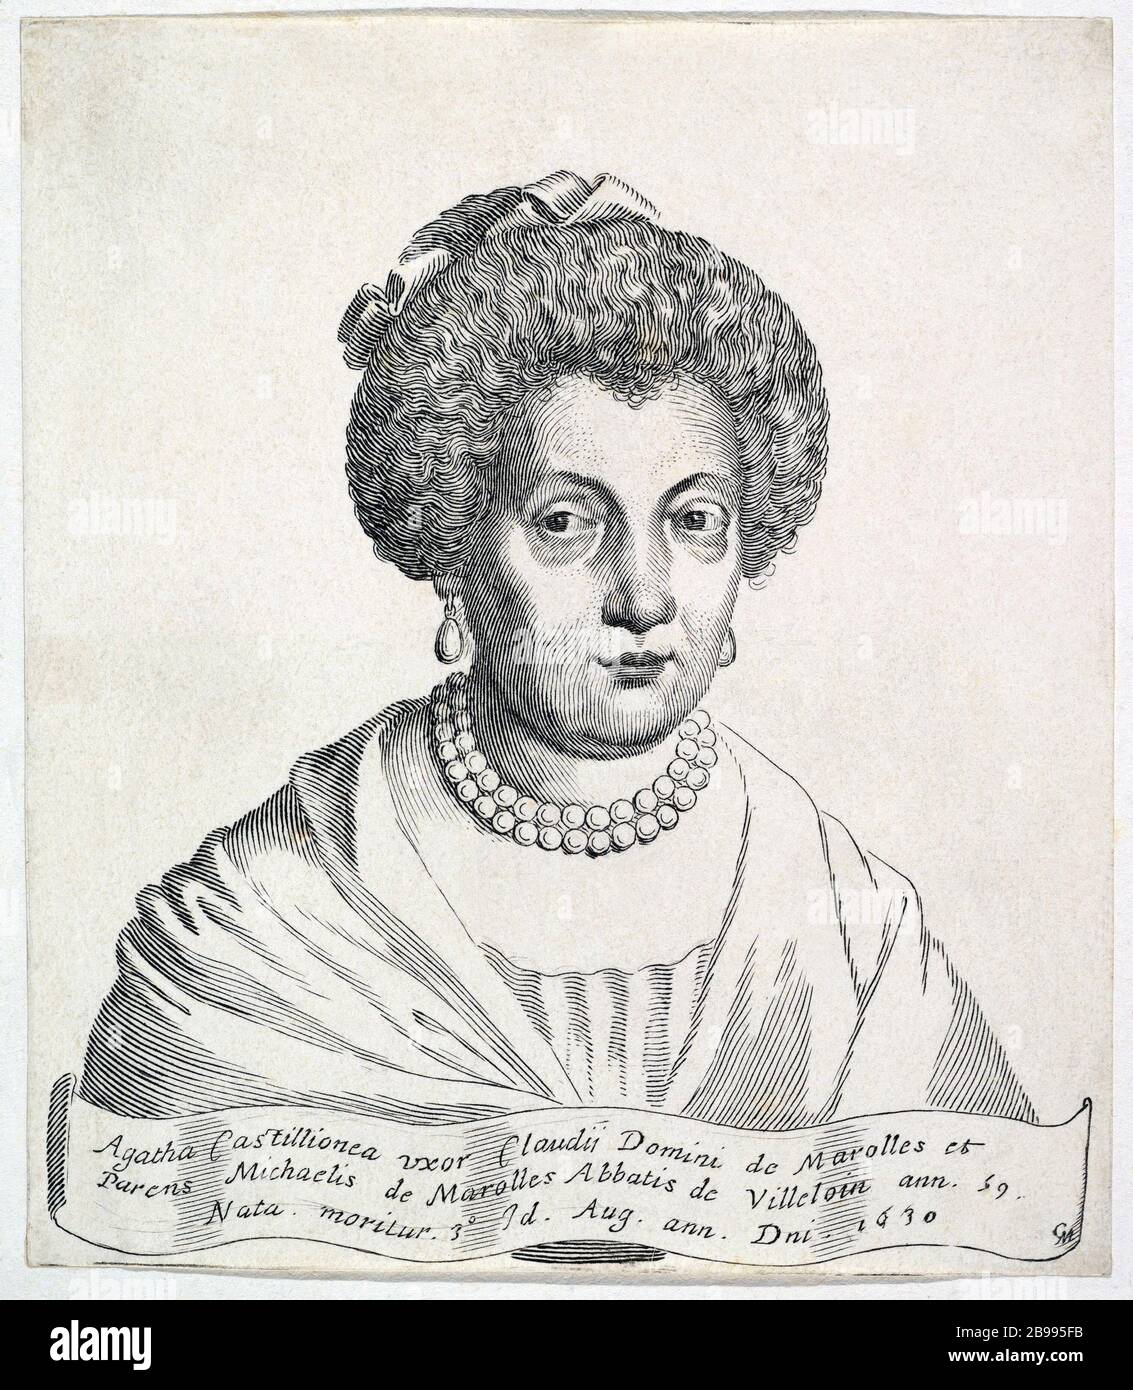 1630 ca , FRANCIA: Nobildonna francese AGATHE DE CHATILLON De MAROLLES ( 1571 - 1630 ). Ritratto inciso di Claude Mellan ( 1598 - 1688 ), 1755. Sposata nel 1594 con Claude DE MAROLLES ( 1564 - 1633 ), la coppia ebbe due figli: Il celebre Abbé Michel De Marolles ( 1600 - 1681 ) e Louis De Marolles ( 1601 - 1651 ). - NOBILTÀ - NOBILI francesi - Nobiltà francese - FRANCIA - illustrazione - illustrazione - incisione - incisione - collana perle - collana di perle - orecchini - orecchini - perla --- ARCHIVIO GBB Foto Stock